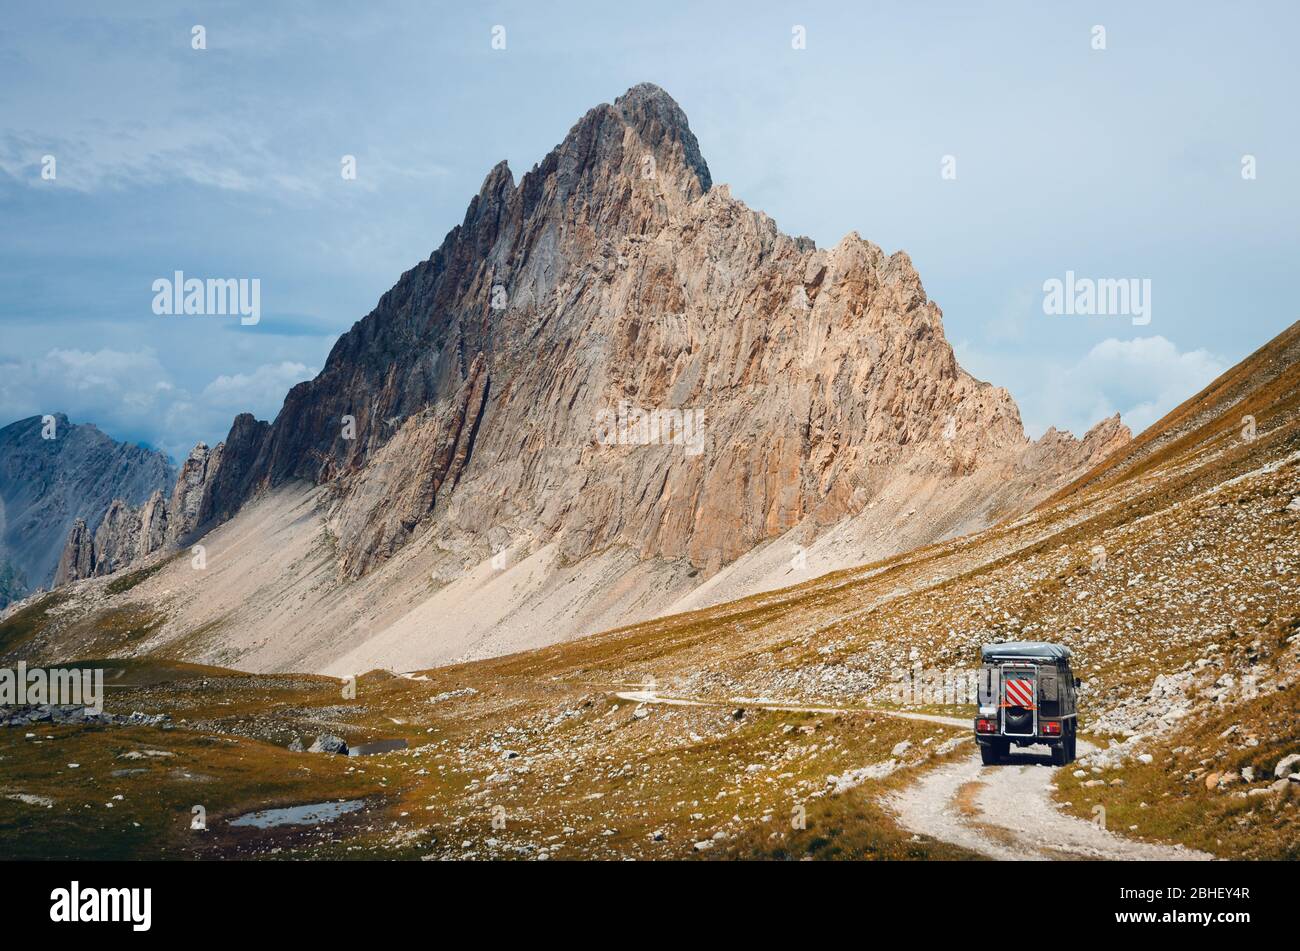 Caravana fuoristrada su un sentiero stretto vicino alla Rocca la Meja, famosa vetta montana nelle Alpi del Piemonte Foto Stock